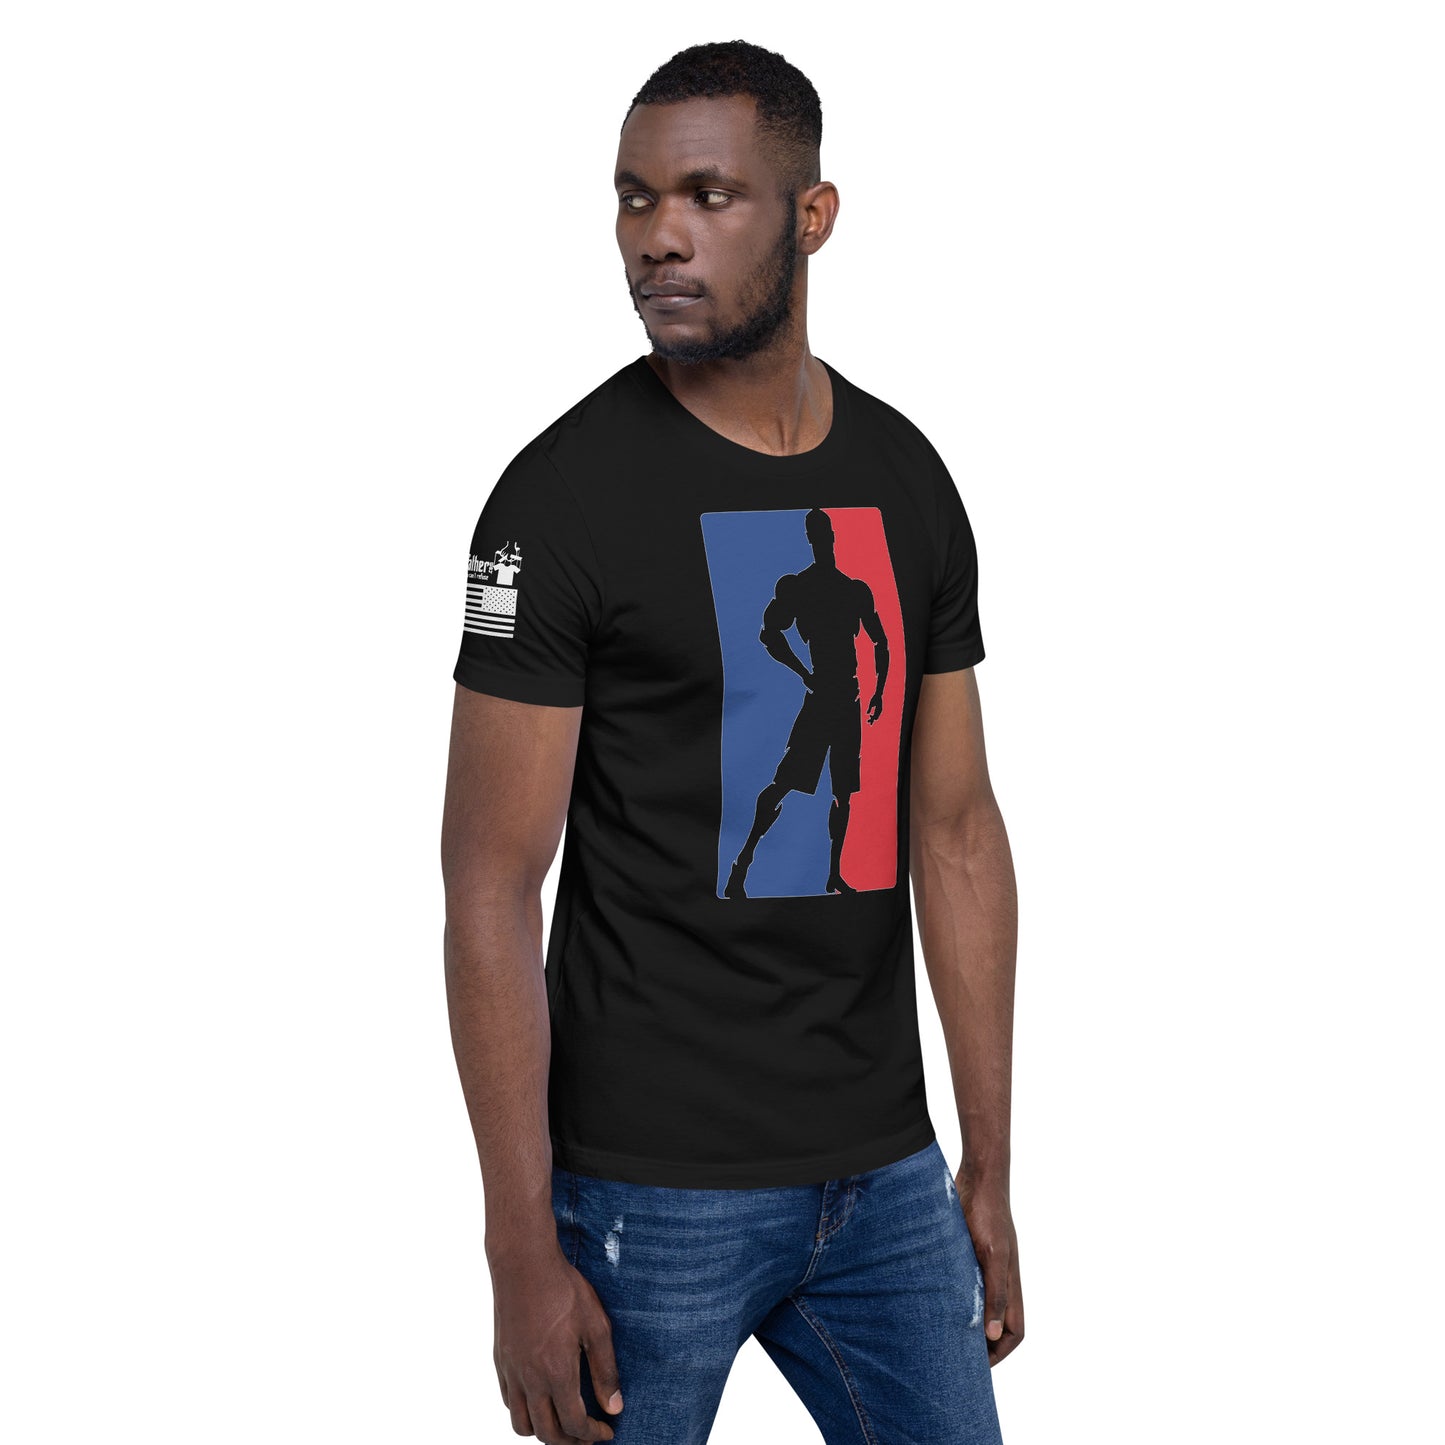 Bodybuilder (2) - Premium T-Shirt (unisex) | TheShirtfather